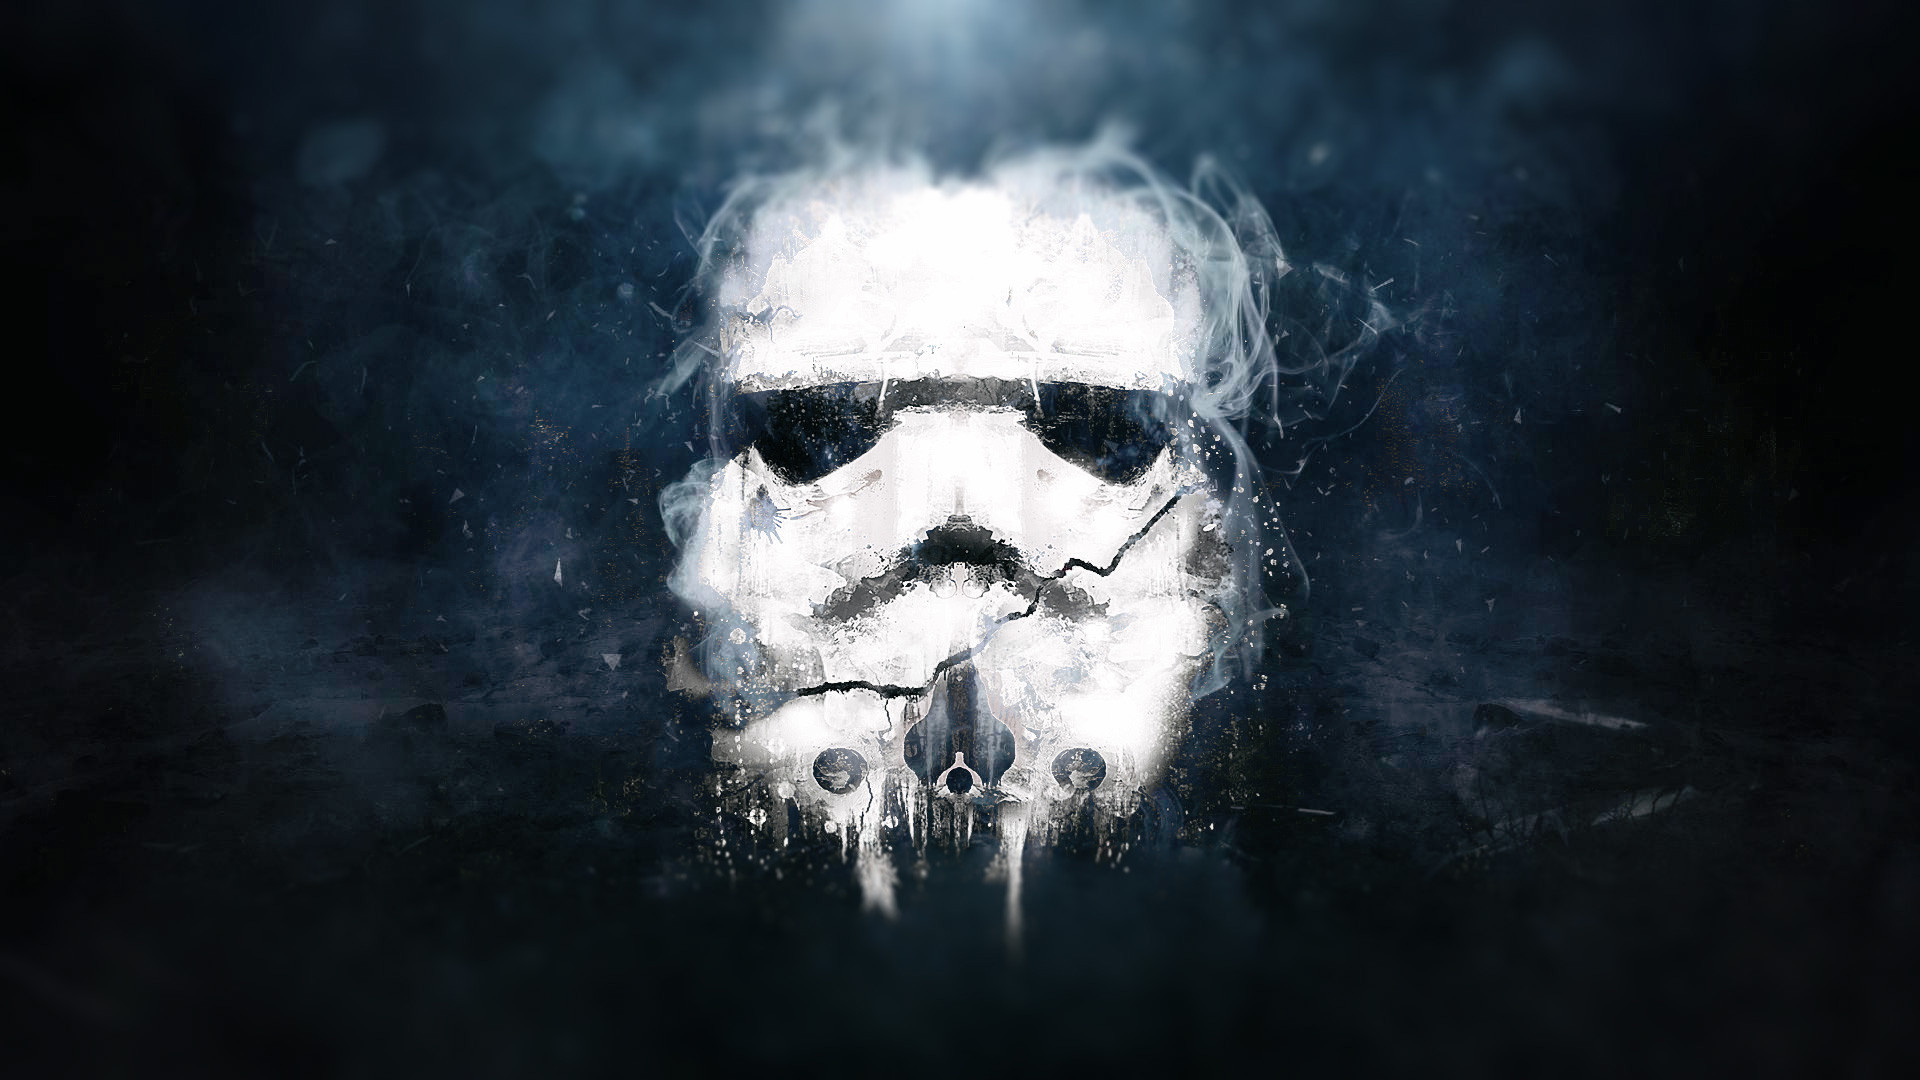 stormtrooper wallpaper,skull,darkness,art,sky,visual arts